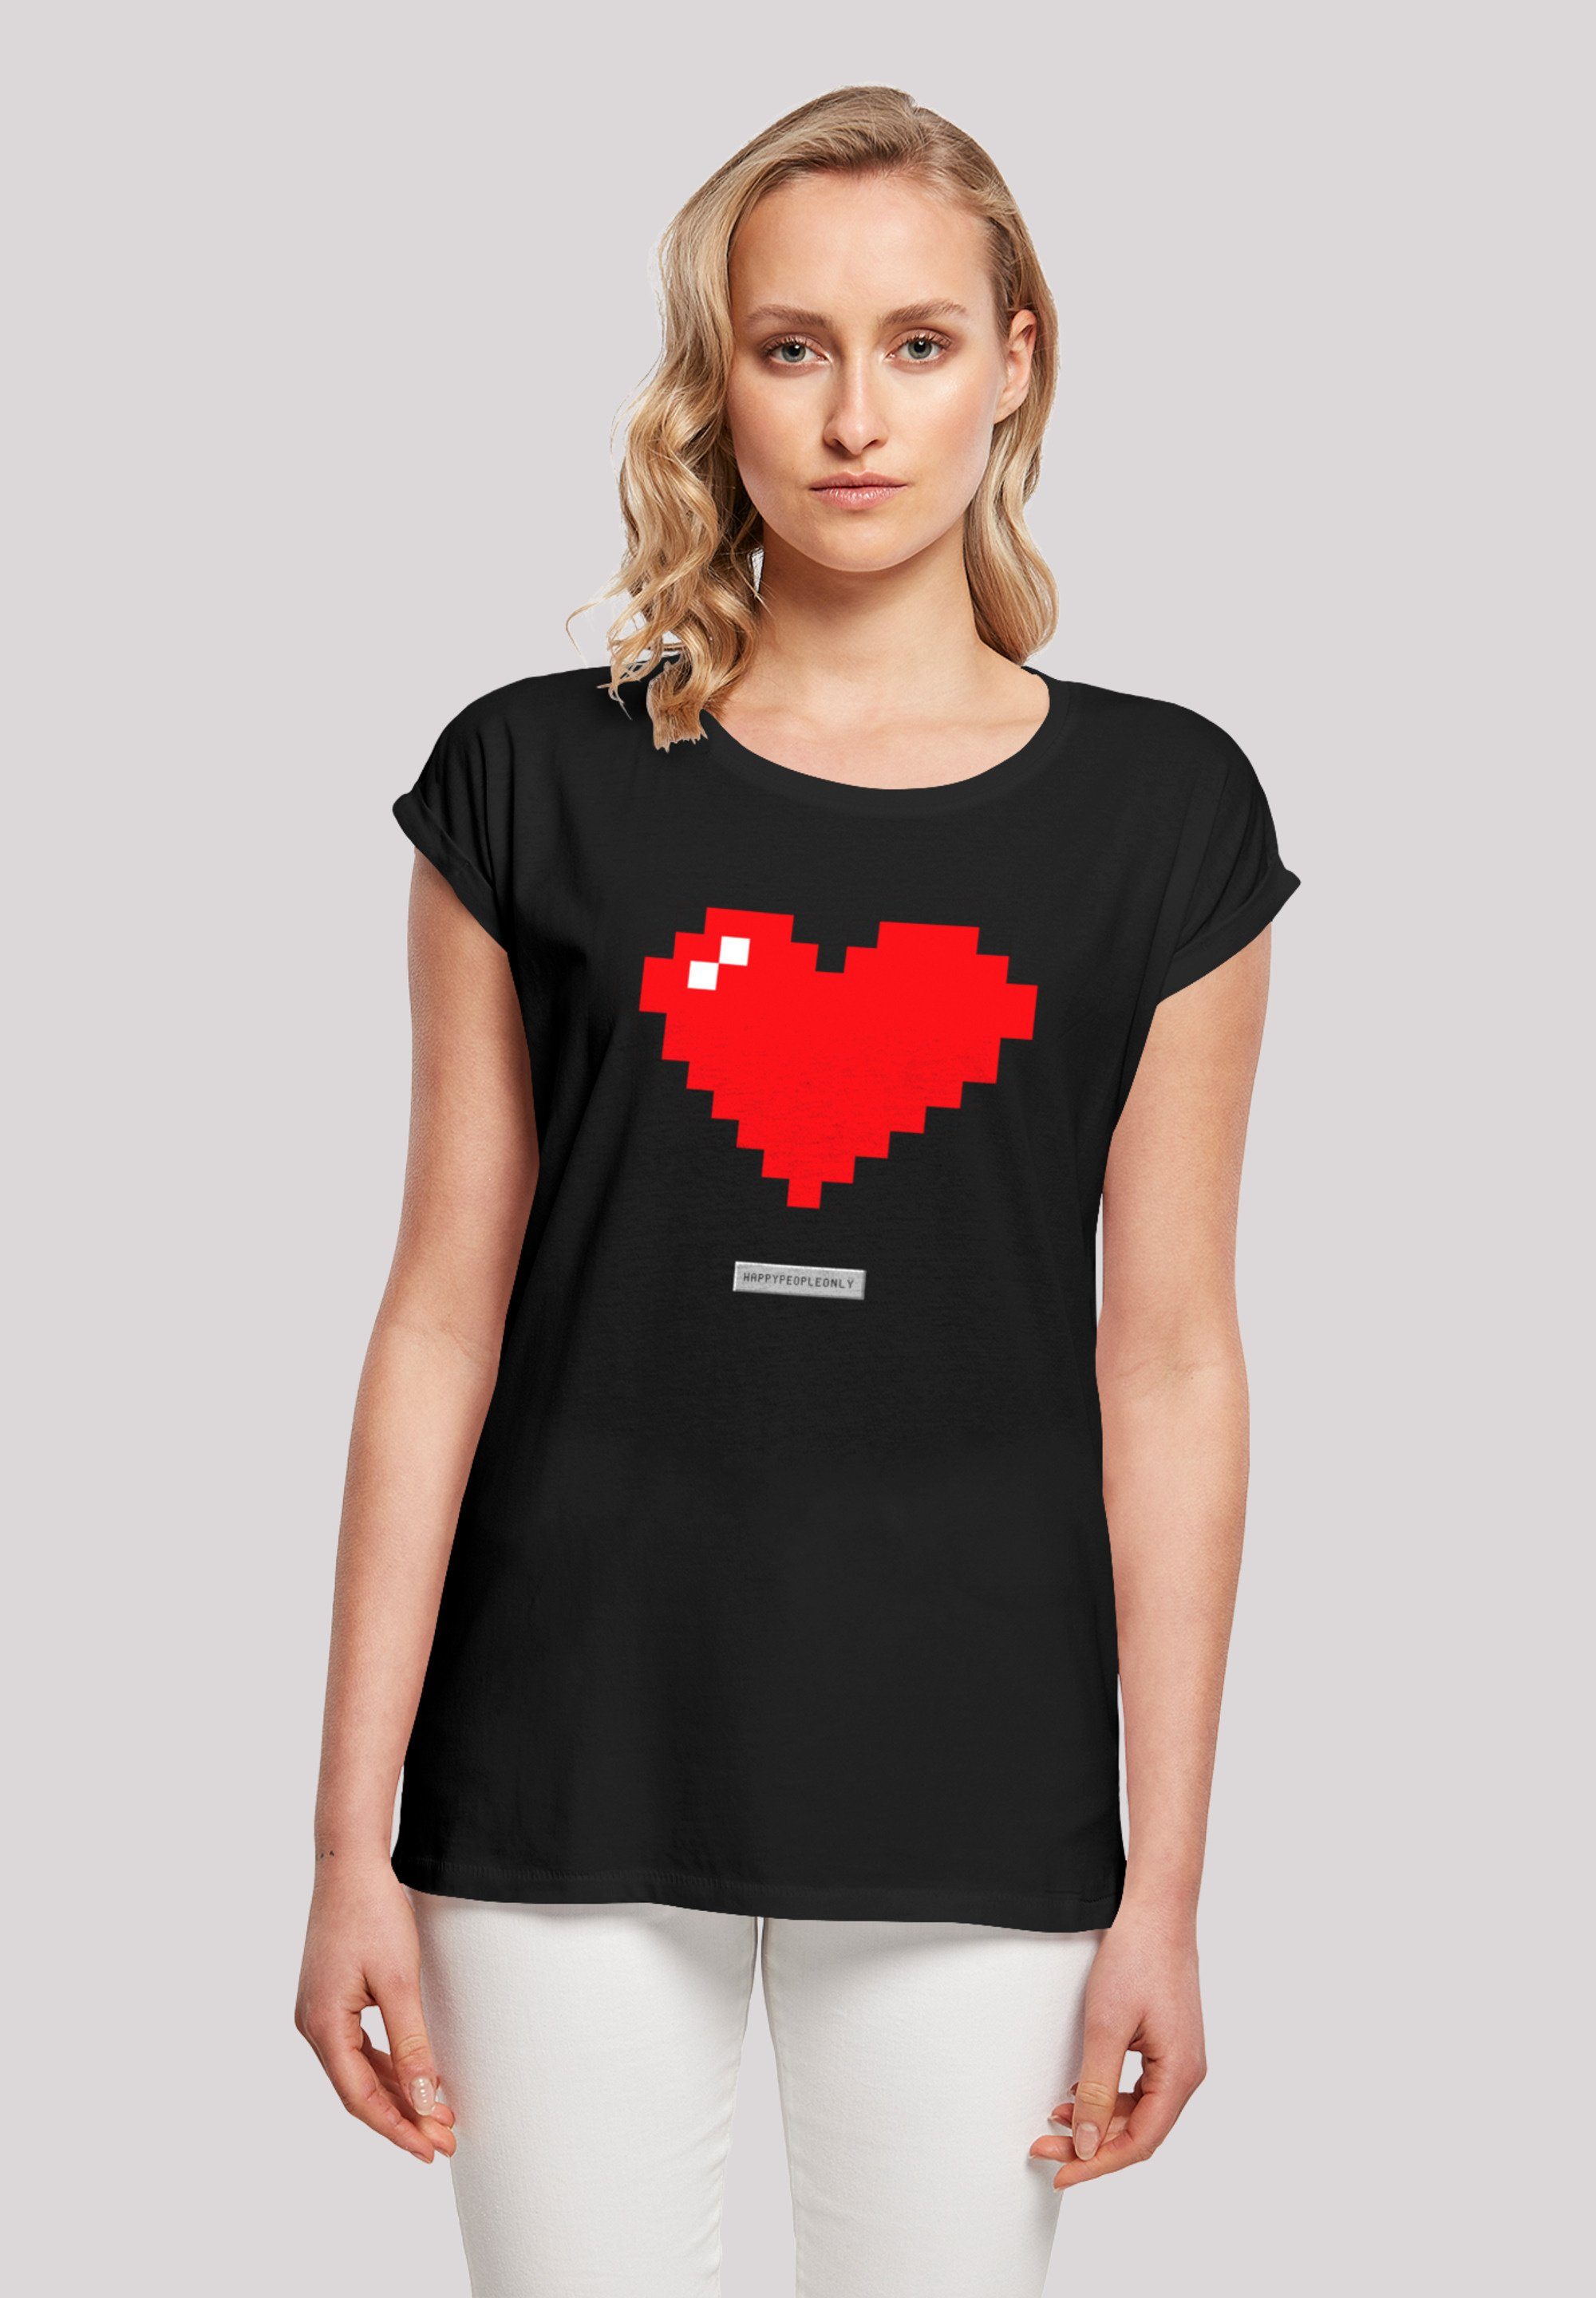 Print, Pixel T-Shirt Good cm und 170 ist Happy Model M People Vibes groß trägt Das F4NT4STIC Herz Größe